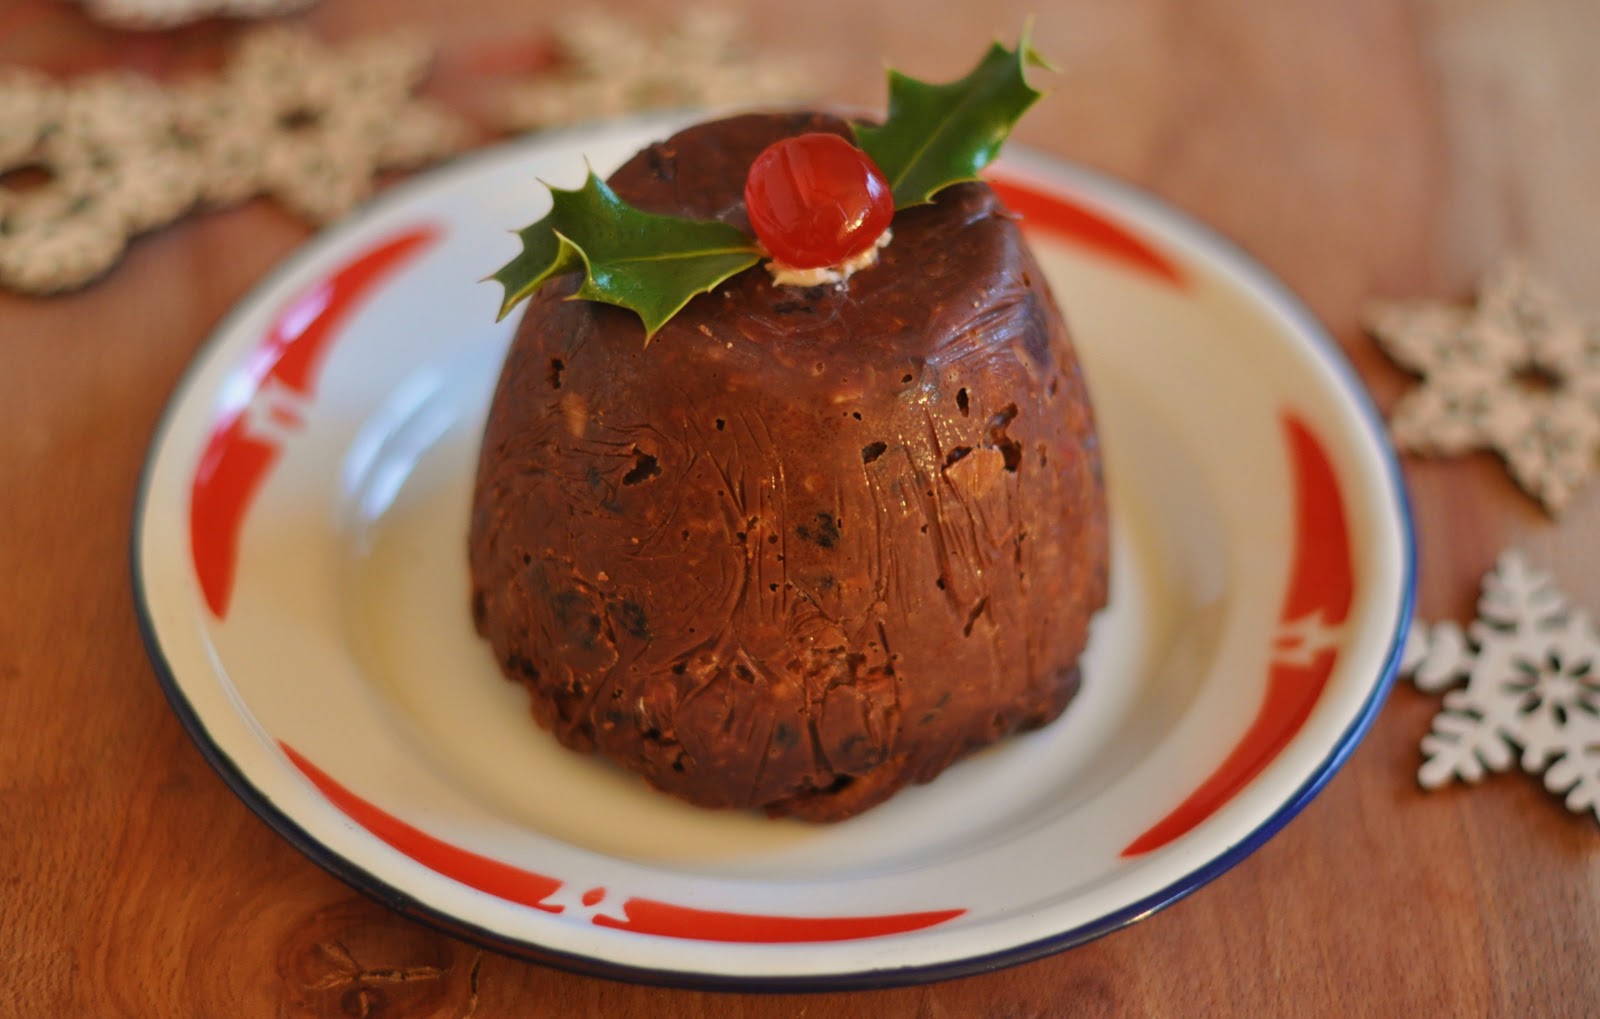 Stuff I make, bake and love: Chocolate Tiffin Christmas Puddings: Easy Edible Christmas Gifts